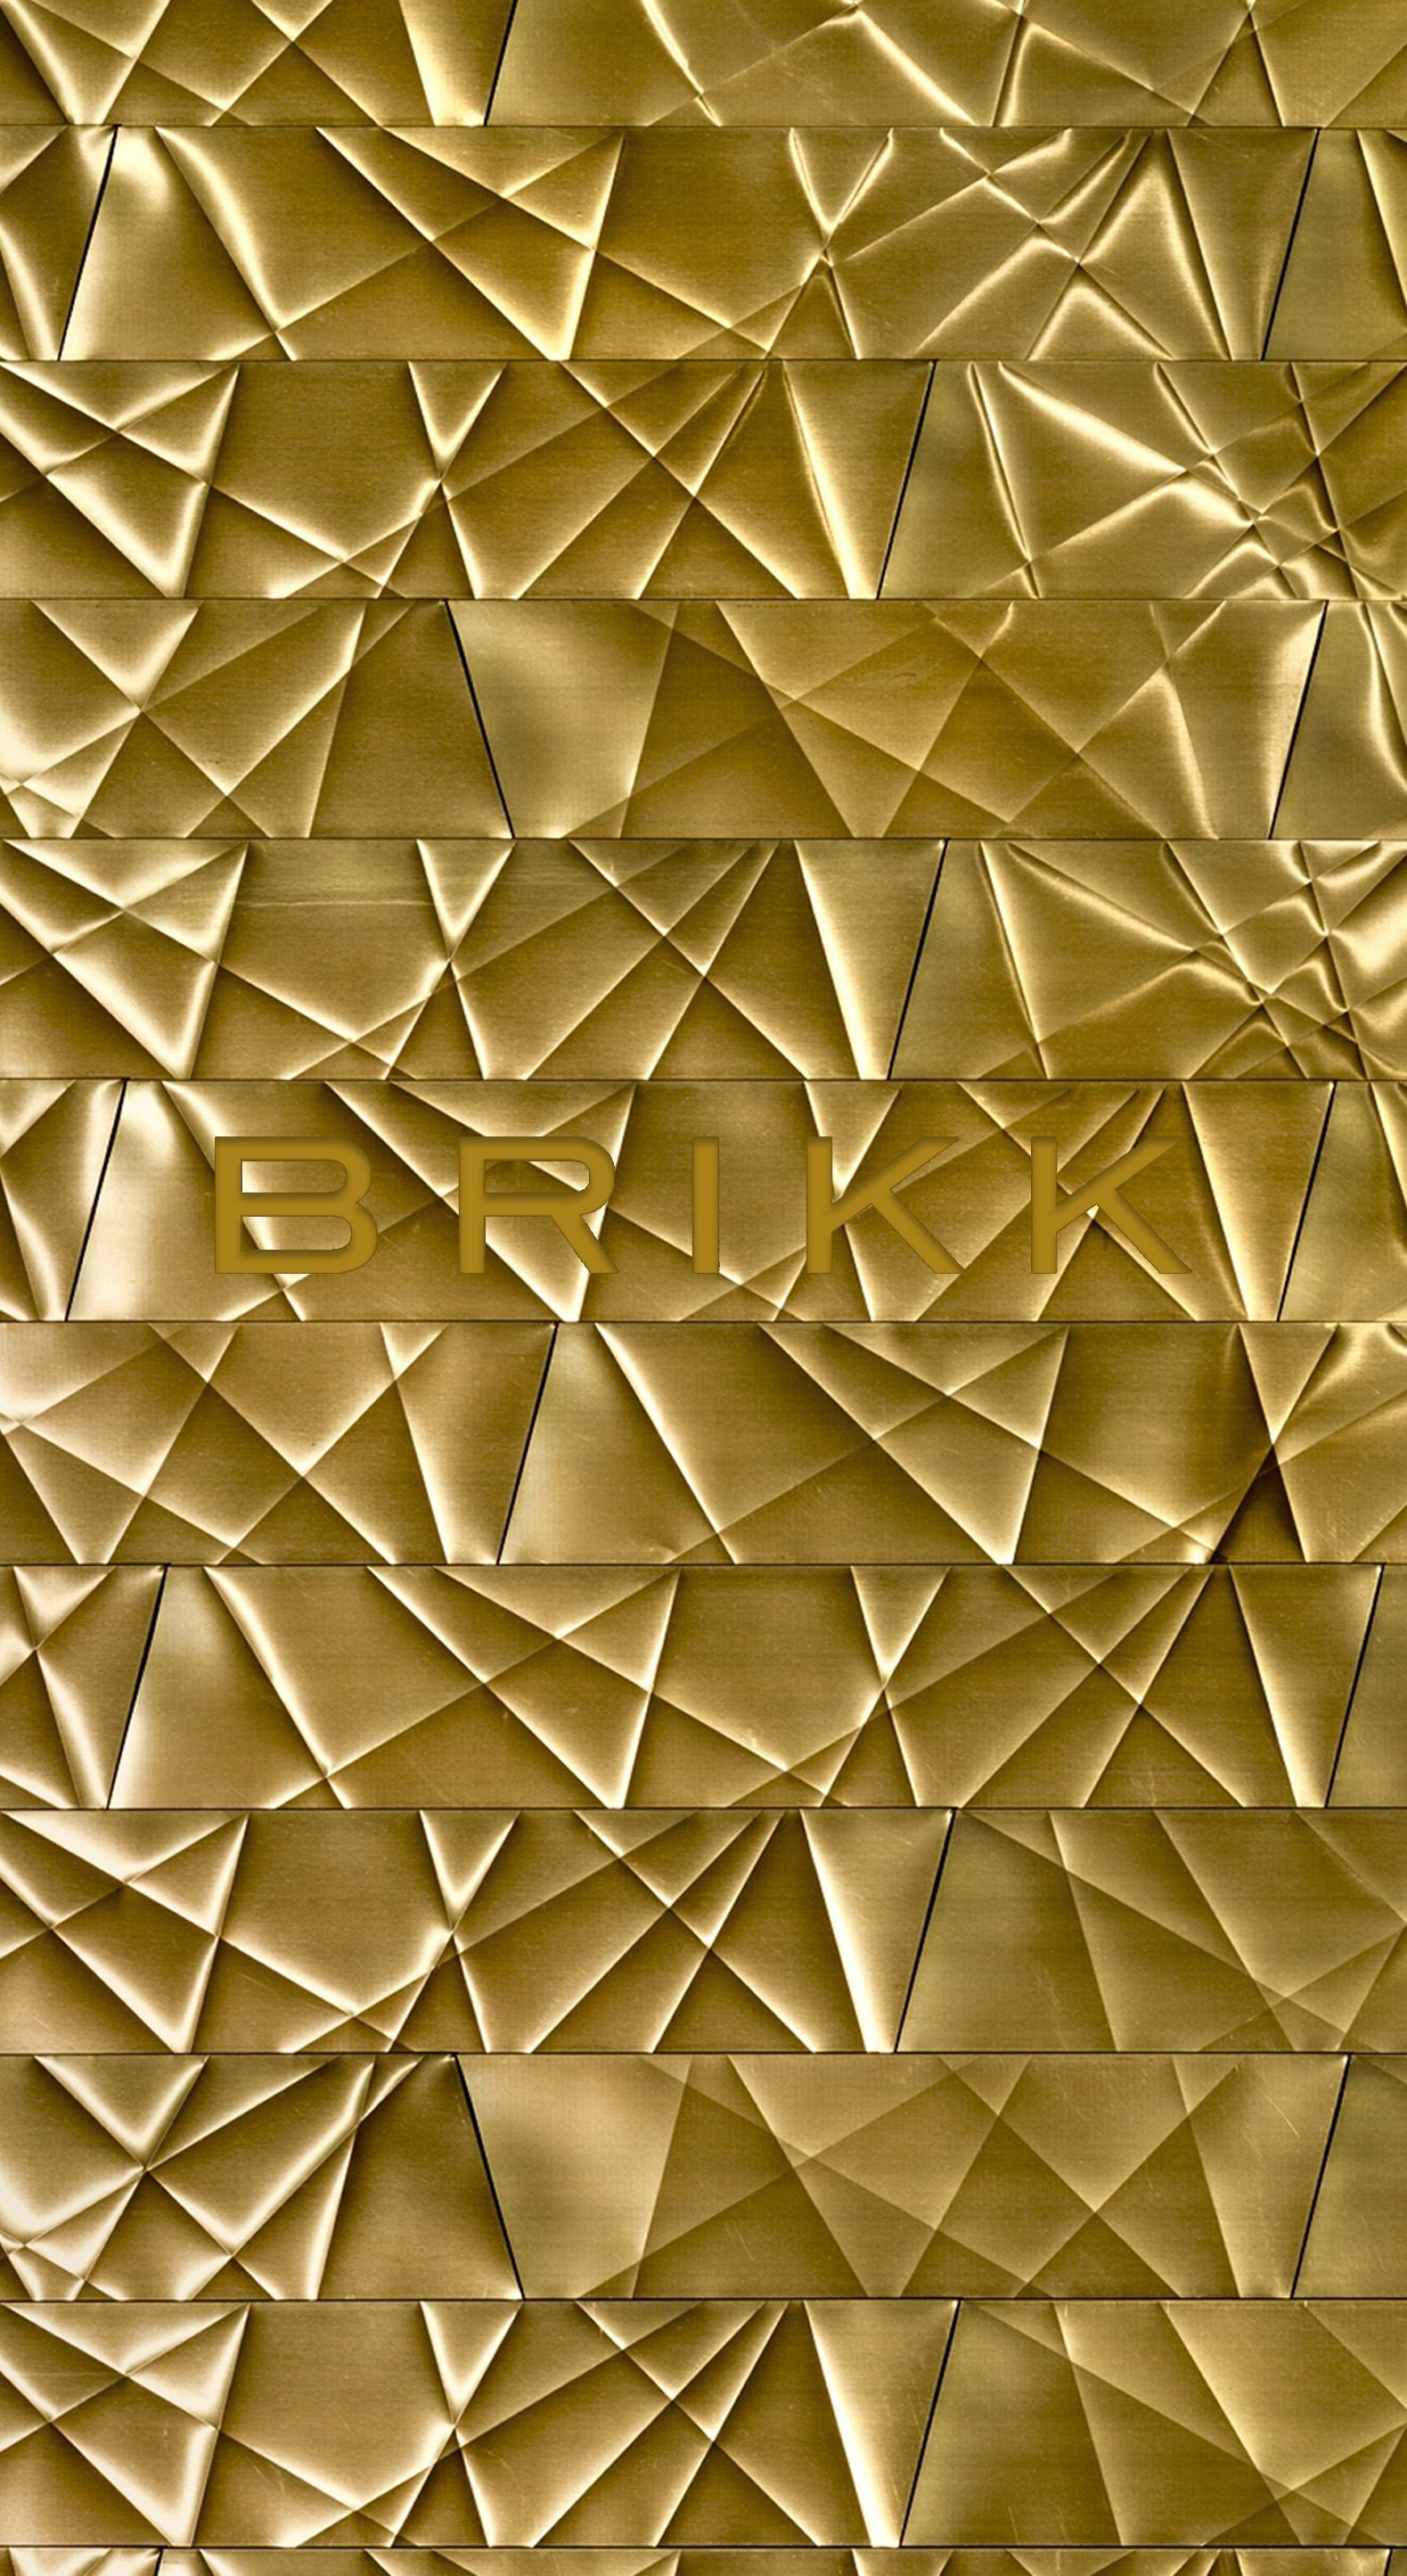 Bạn đang tìm kiếm một hình nền đẹp, sang trọng, và đầy ấn tượng để trang trí cho thiết bị điện tử của mình? Đừng bỏ lỡ hình nền vàng 24K tuyệt đẹp trên WallpaperDog! Sắc vàng sang trọng, kiểu dáng tinh tế, hứa hẹn sẽ đem lại cho bạn những trải nghiệm thật độc đáo.